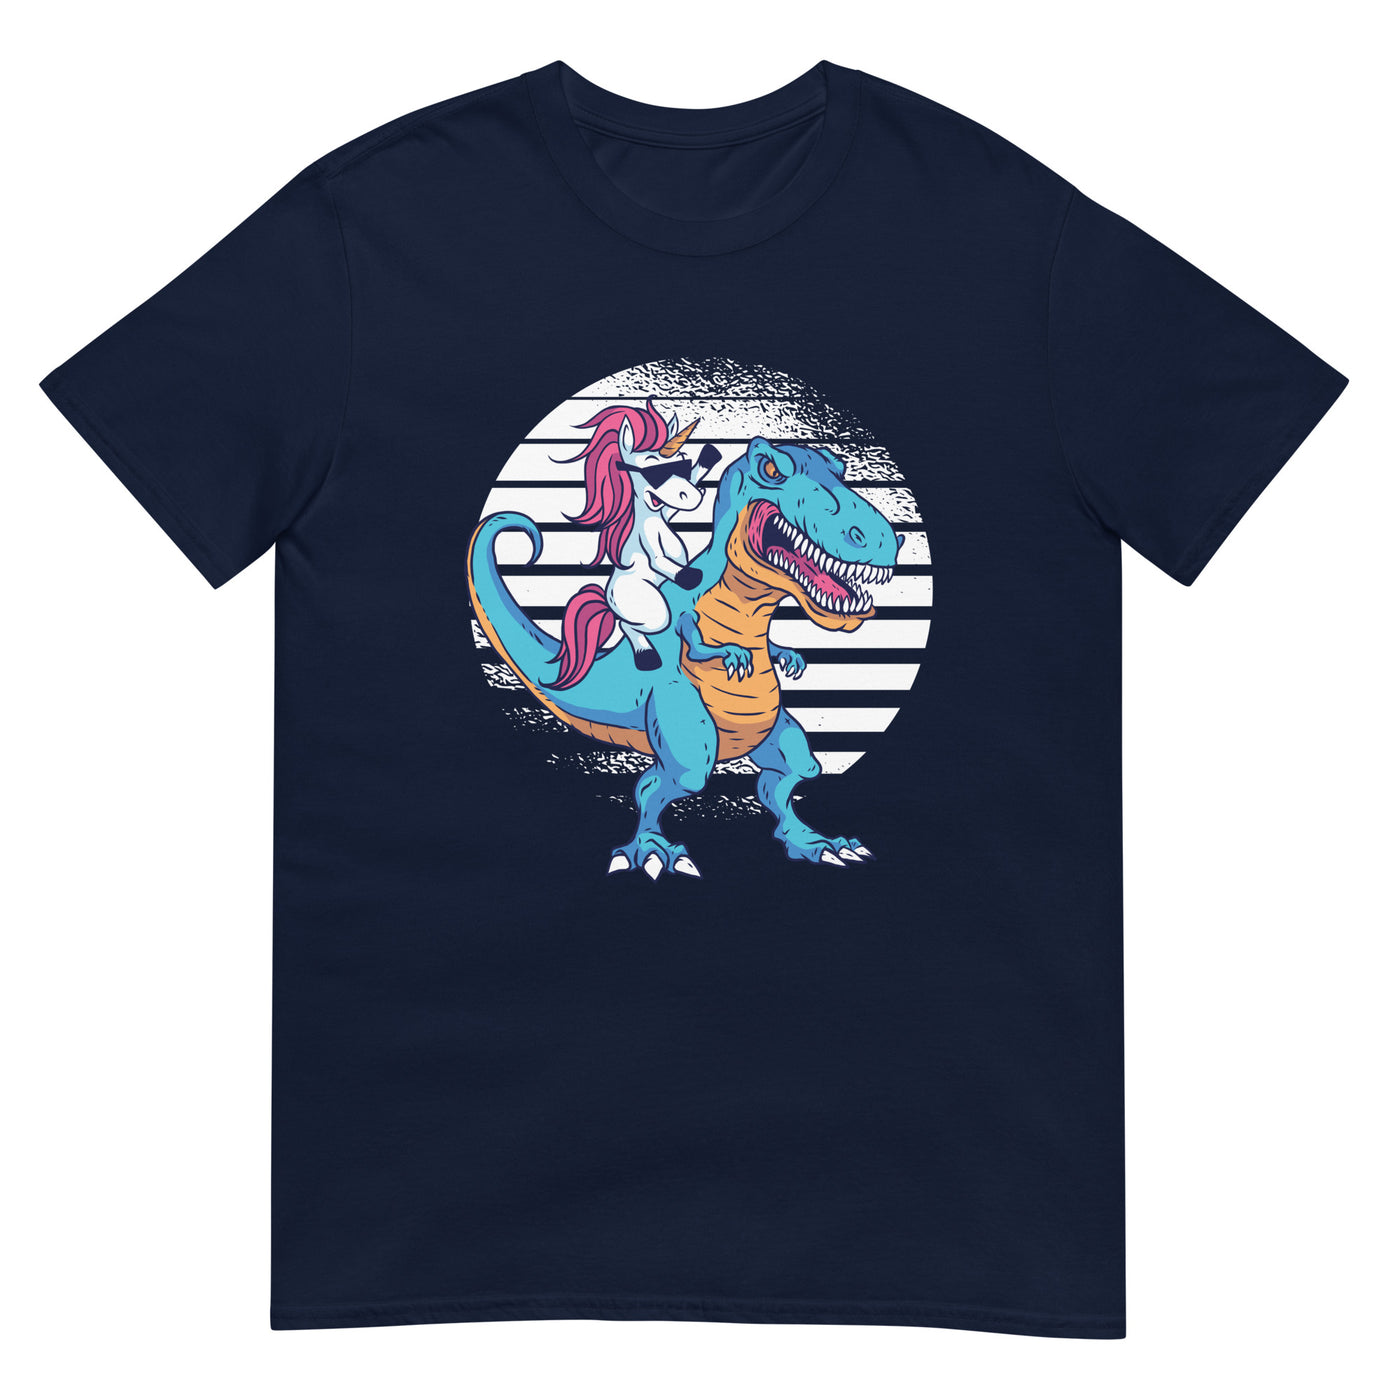 Einhorn reitet auf T-Rex - Sonnenbrille, Verrücktheit, Cartoon - Herren T-Shirt Other_Niches xxx yyy zzz Navy